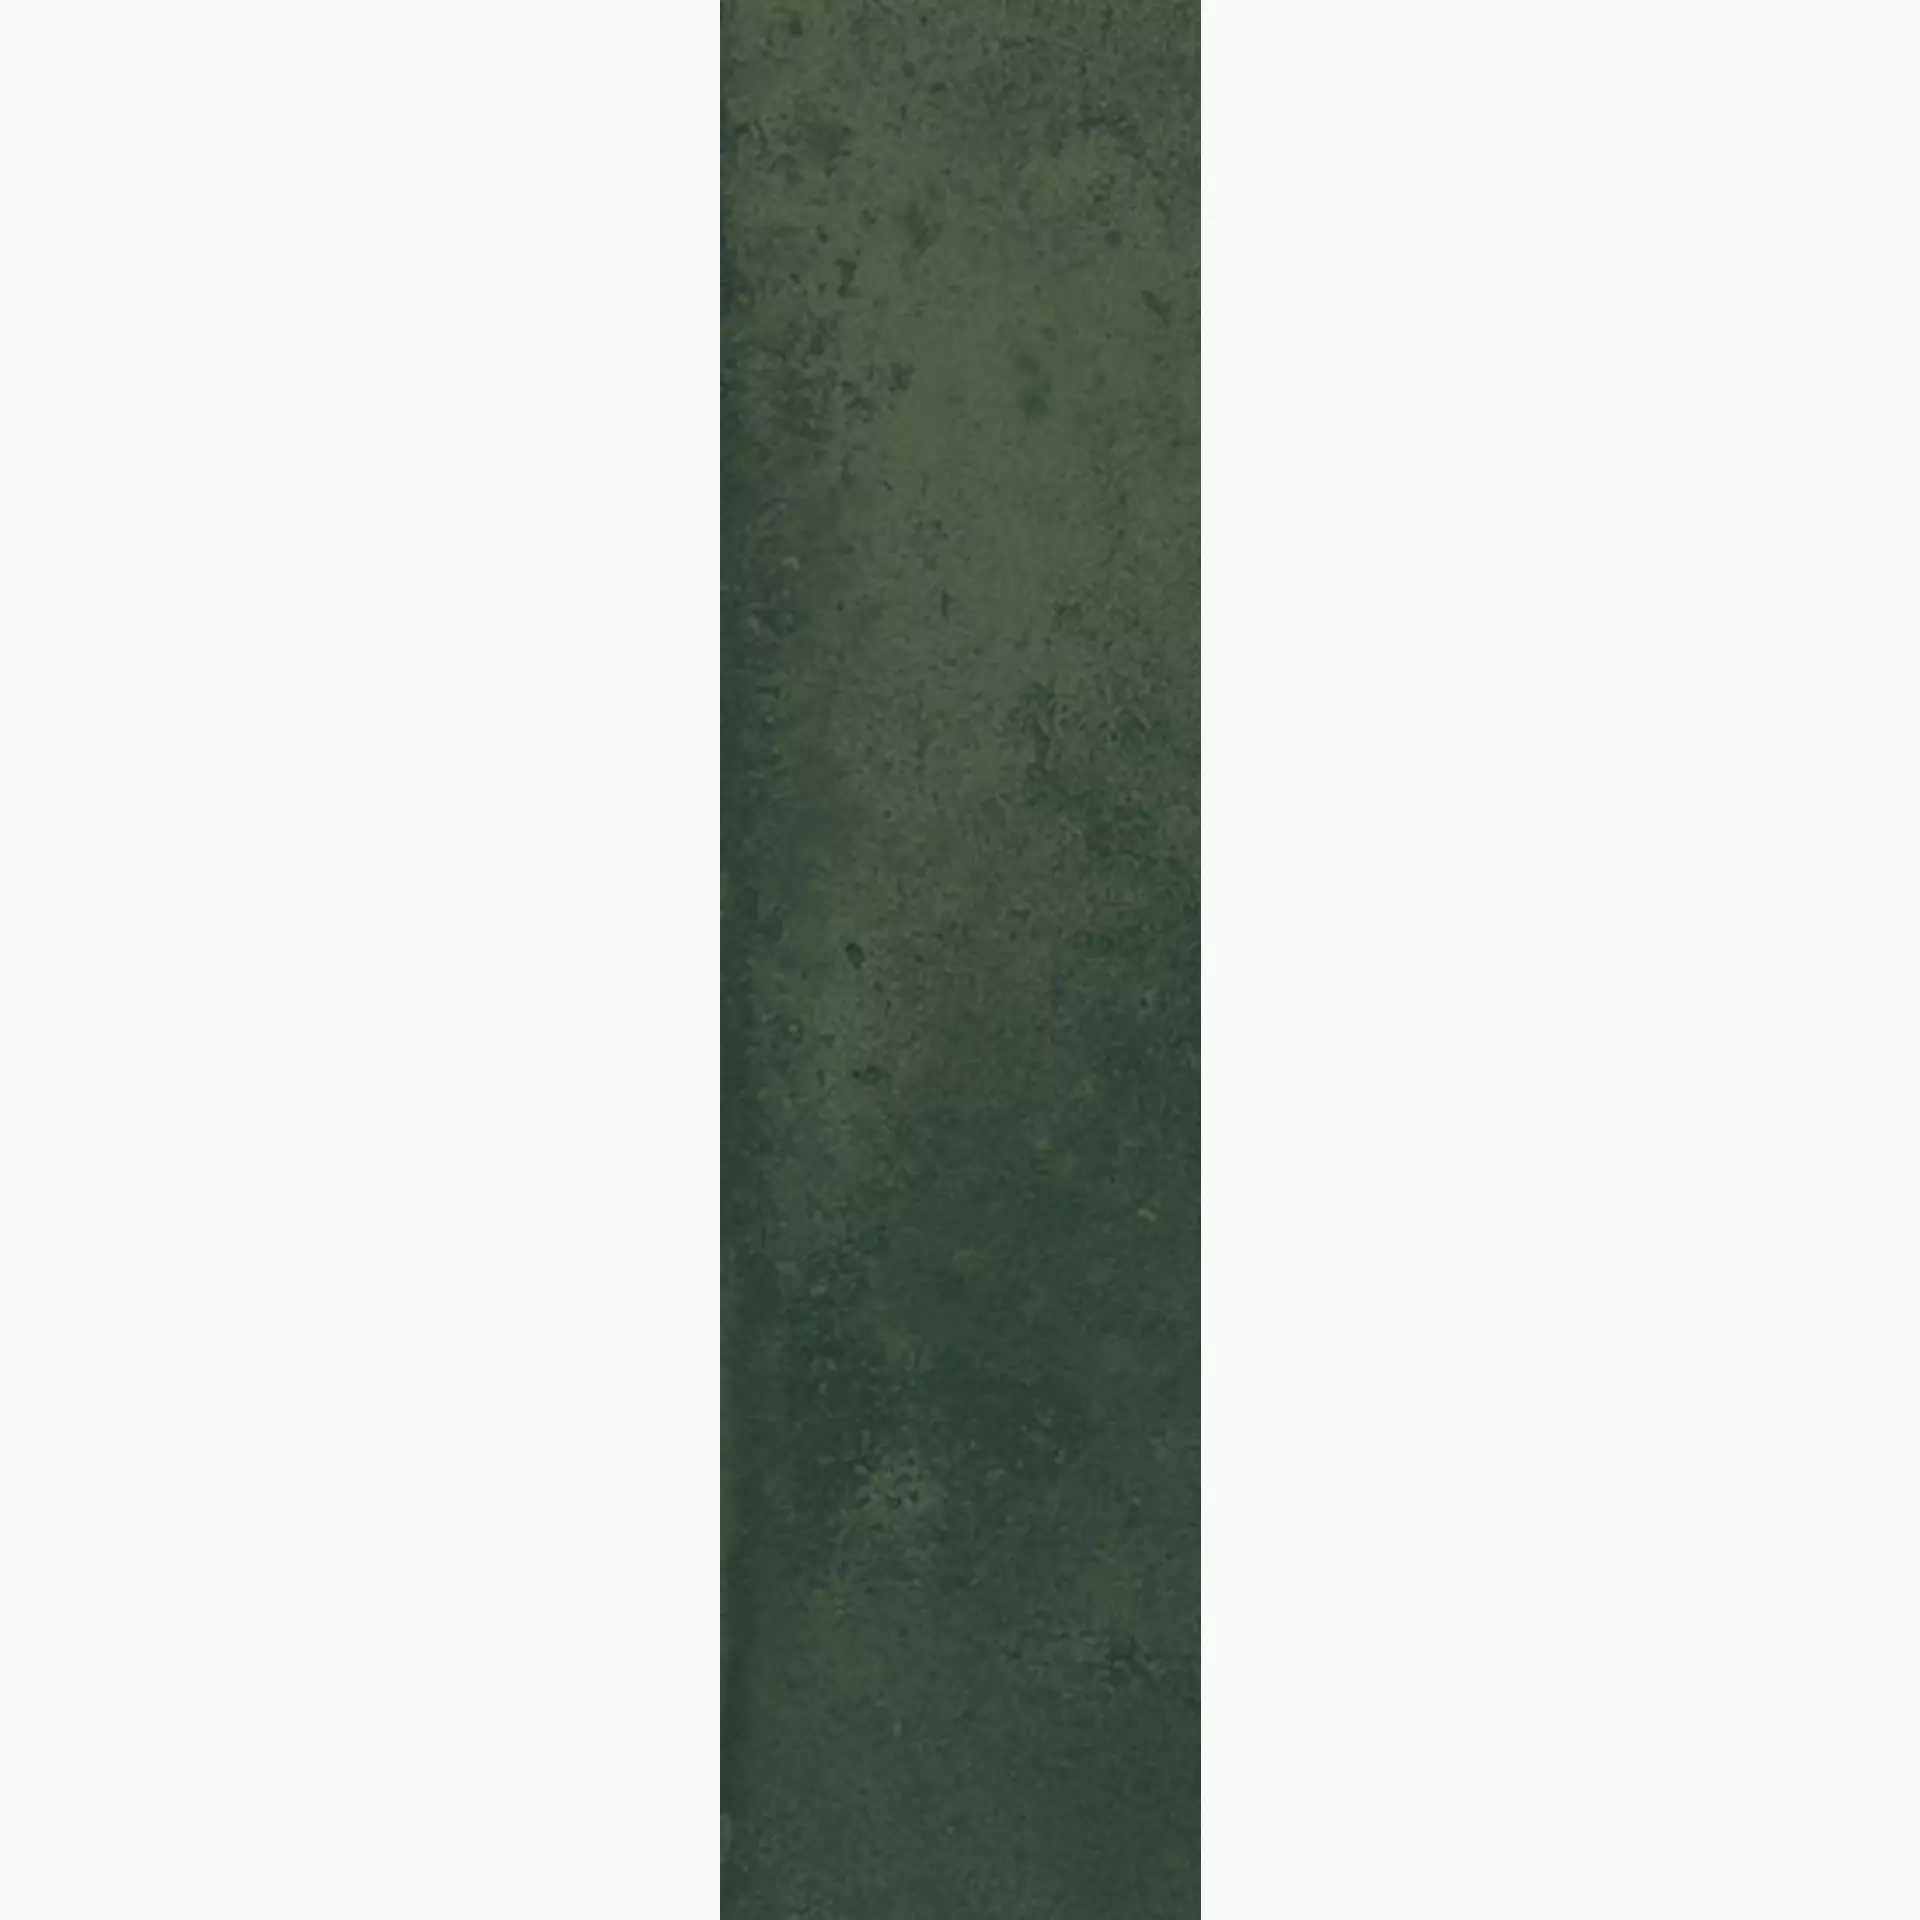 MGM Jord Smeraldo Glossy JORDSME728 7x28cm